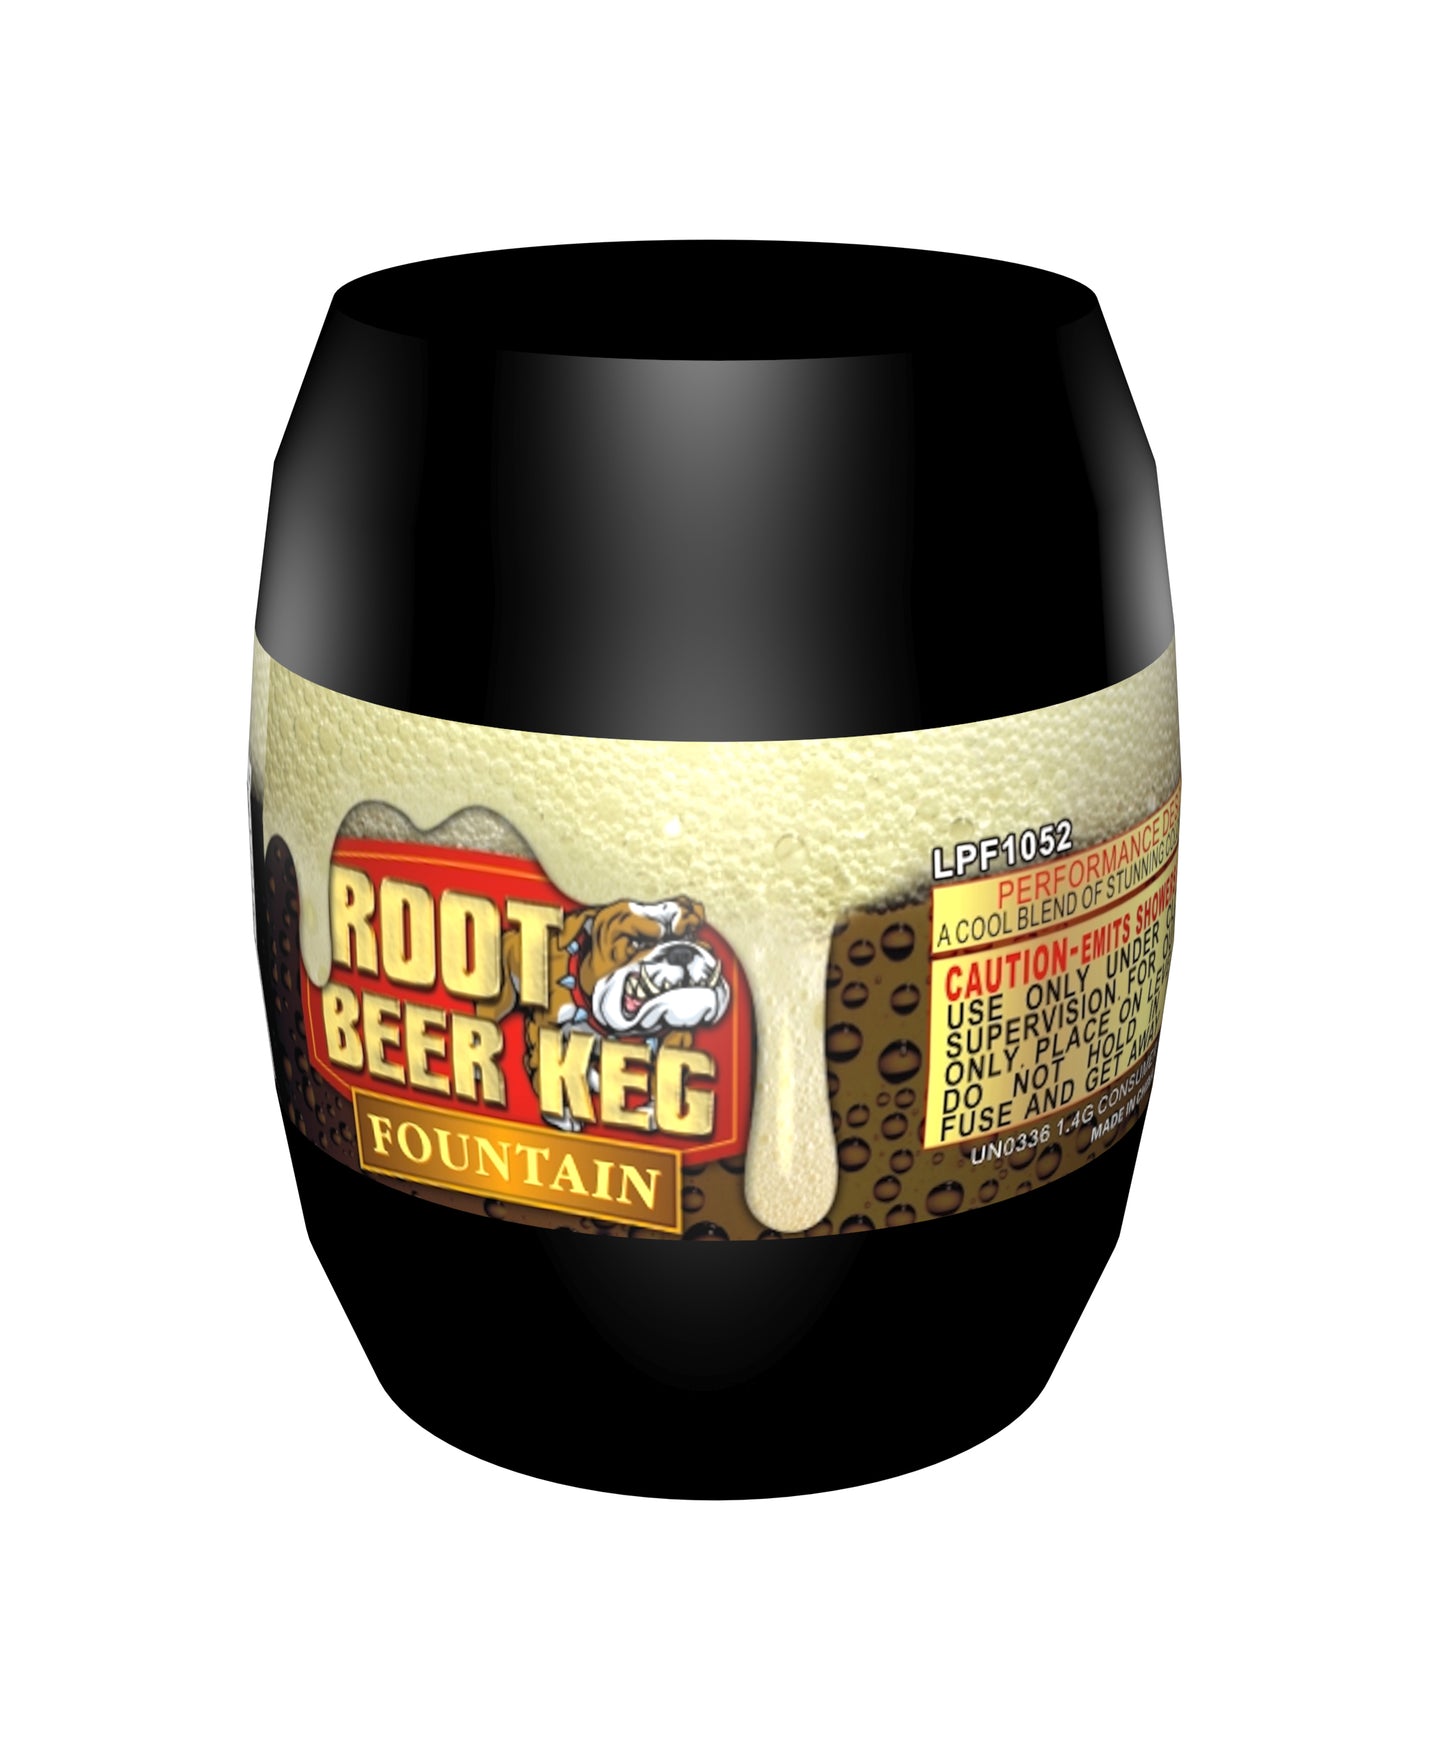 Root Beer Keg Fountain